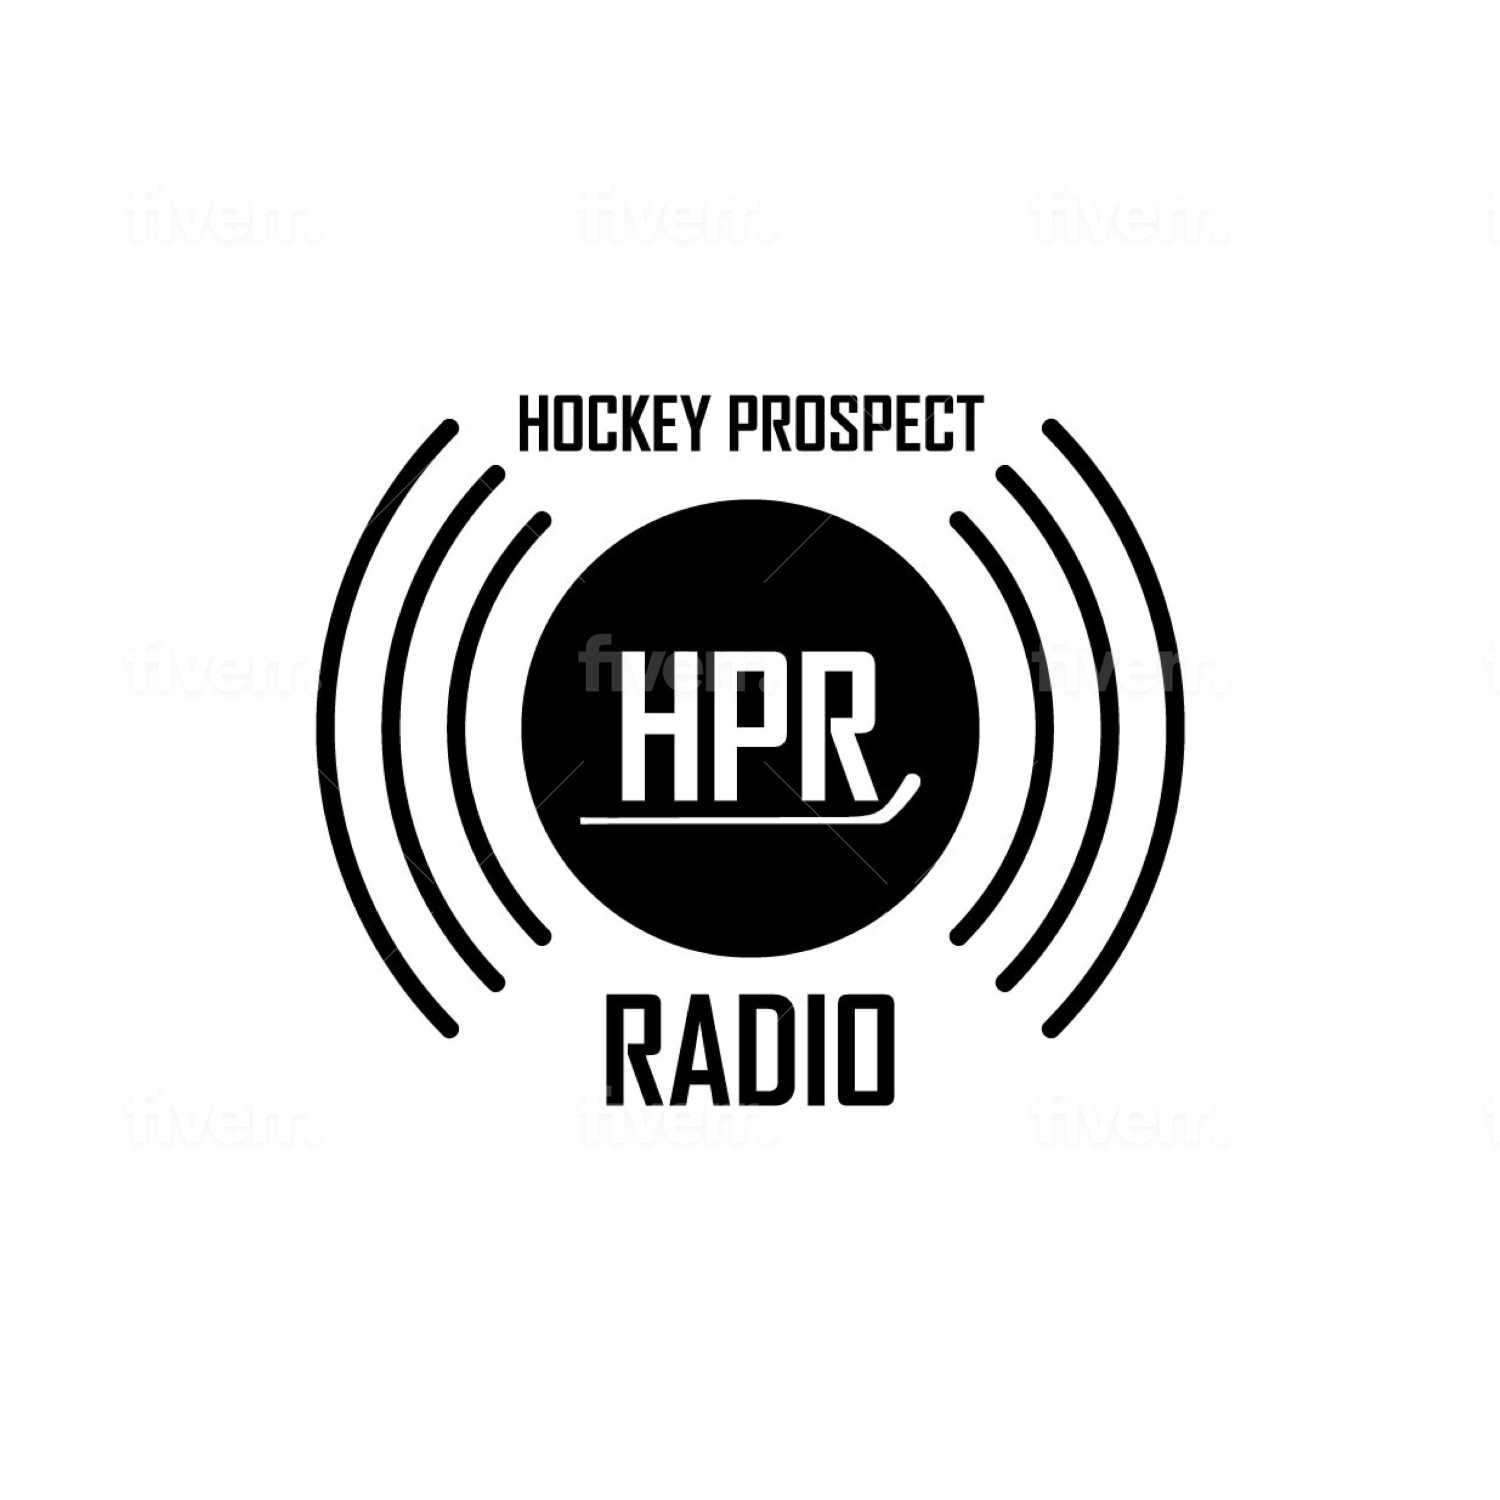 HPR - Season 19 - Episode 14- Segment 5 - WJC Player Development with Pat Malloy